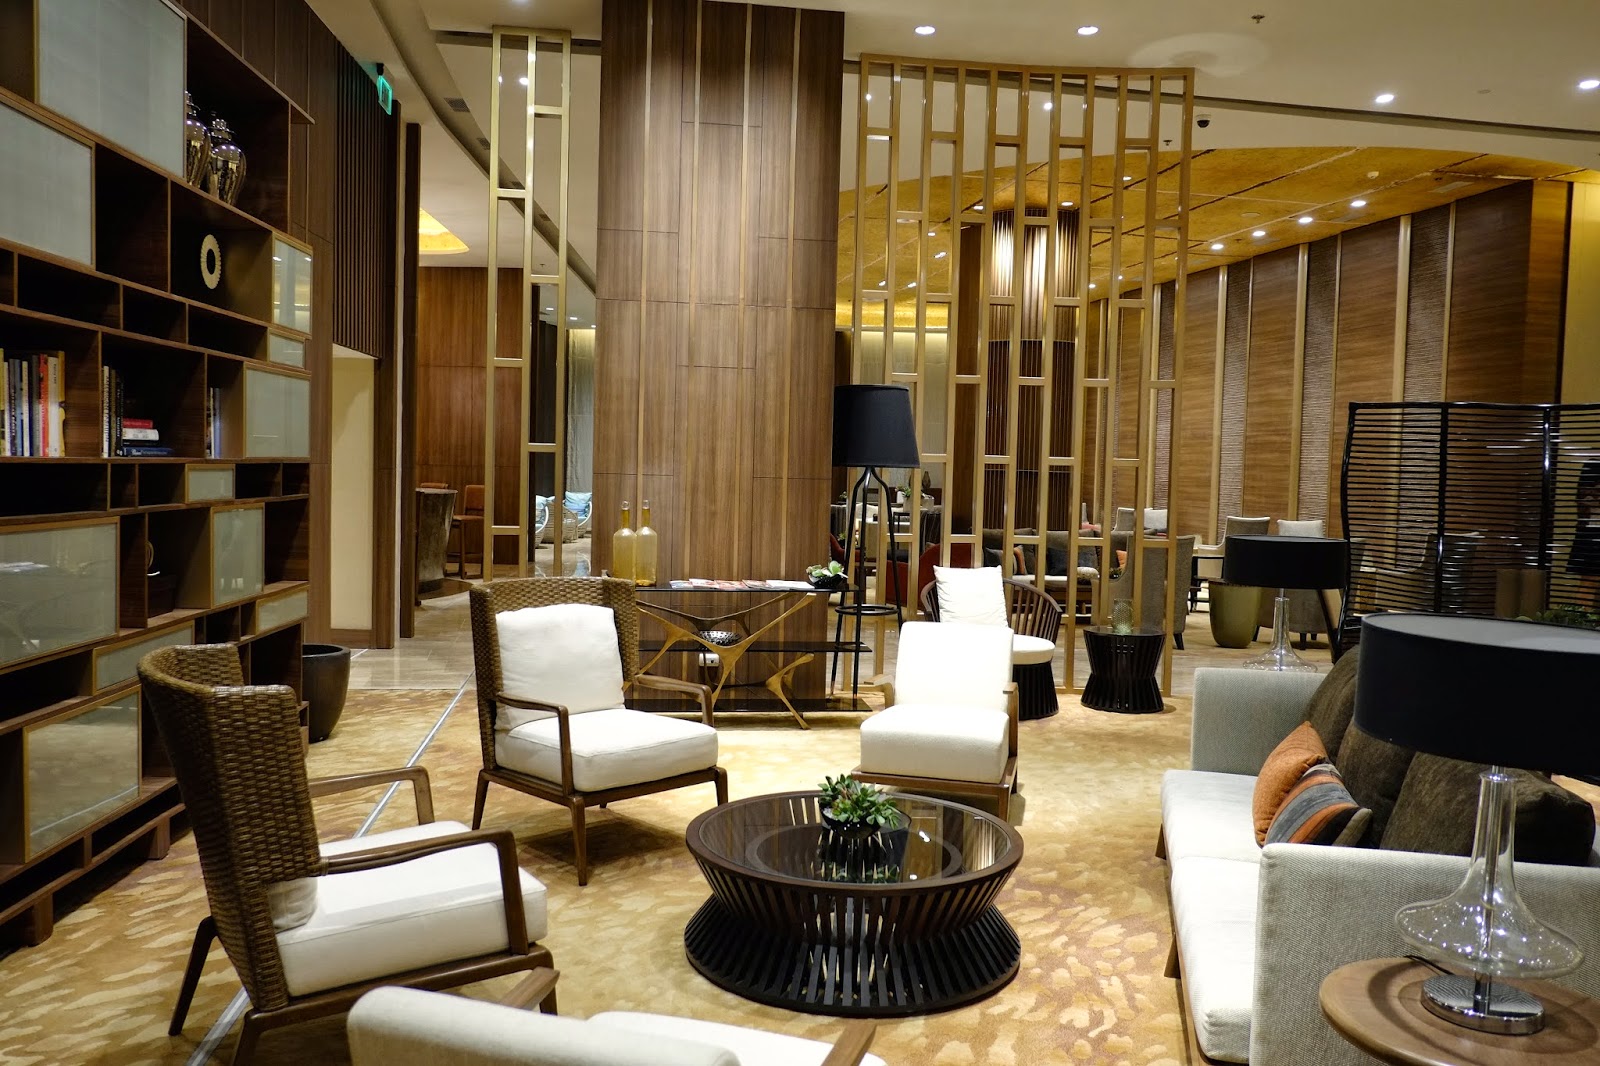 One Shangri-la, A Luxury Condominium by Shang Properties